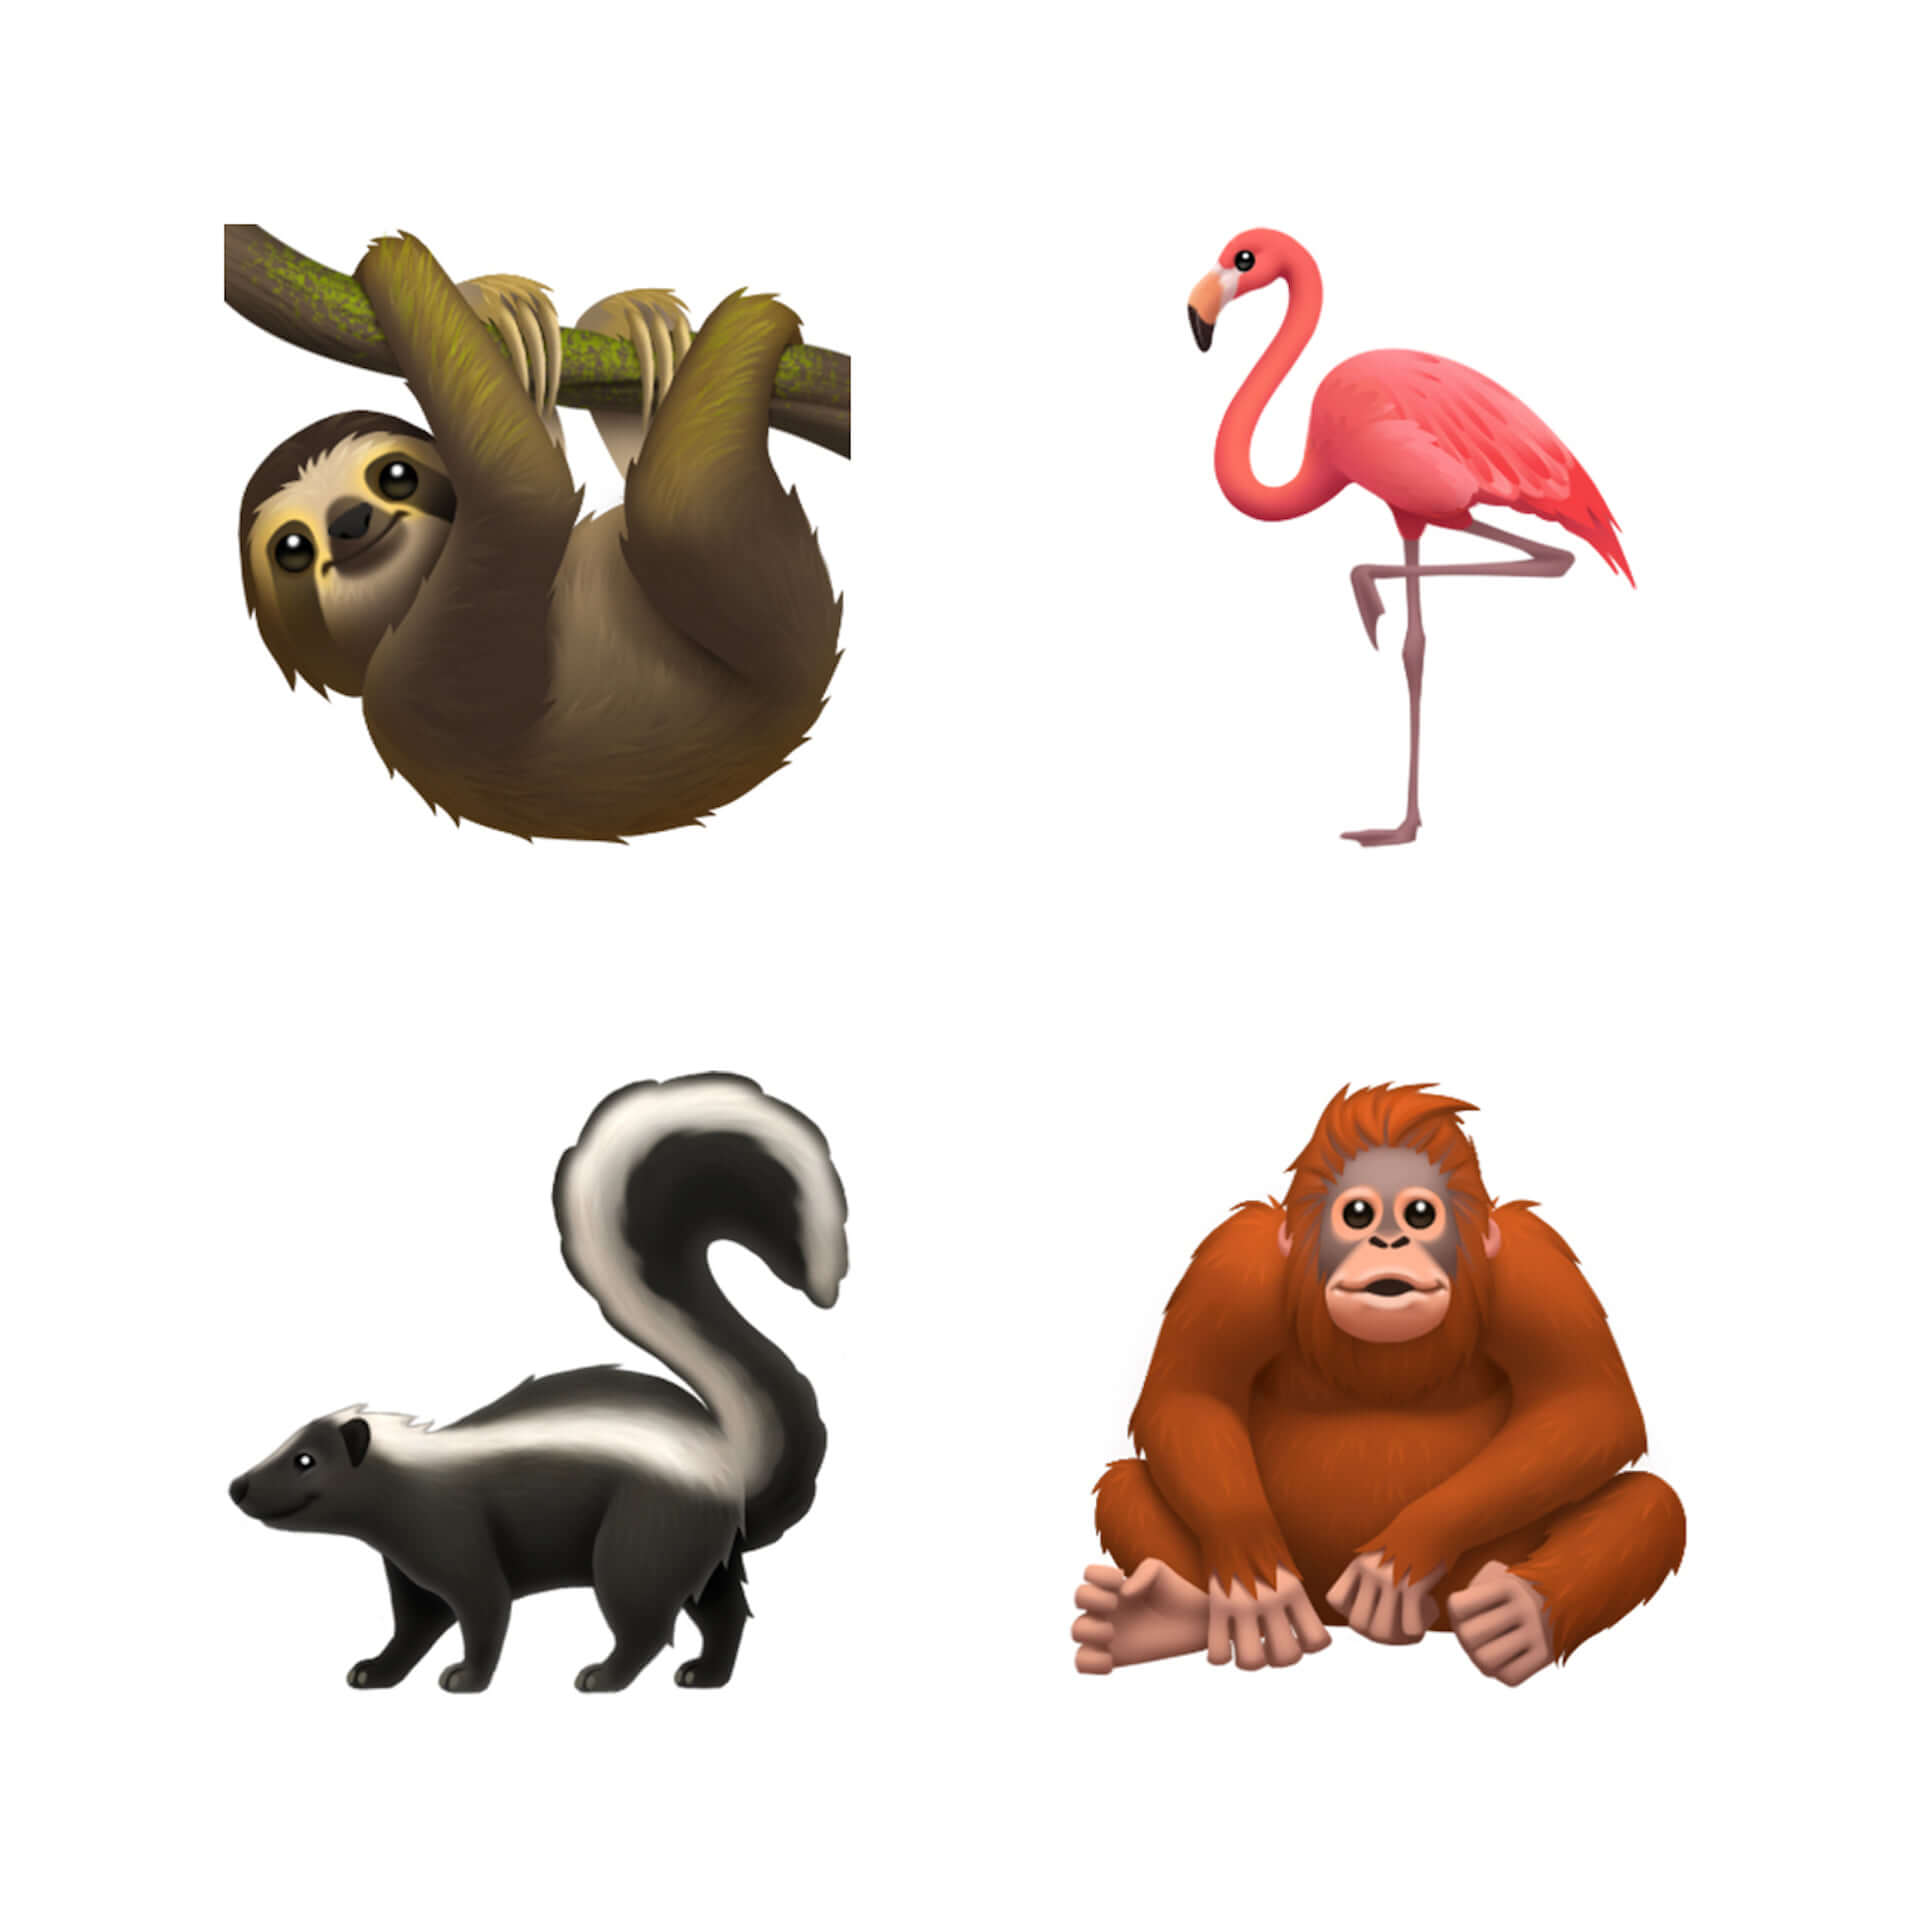 キュートな動物たちから多様性を奨励する絵文字まで！Apple「iOS 13」に追加予定の絵文字の一部が公開に tech190717_apple_emoji_main-1920x1920